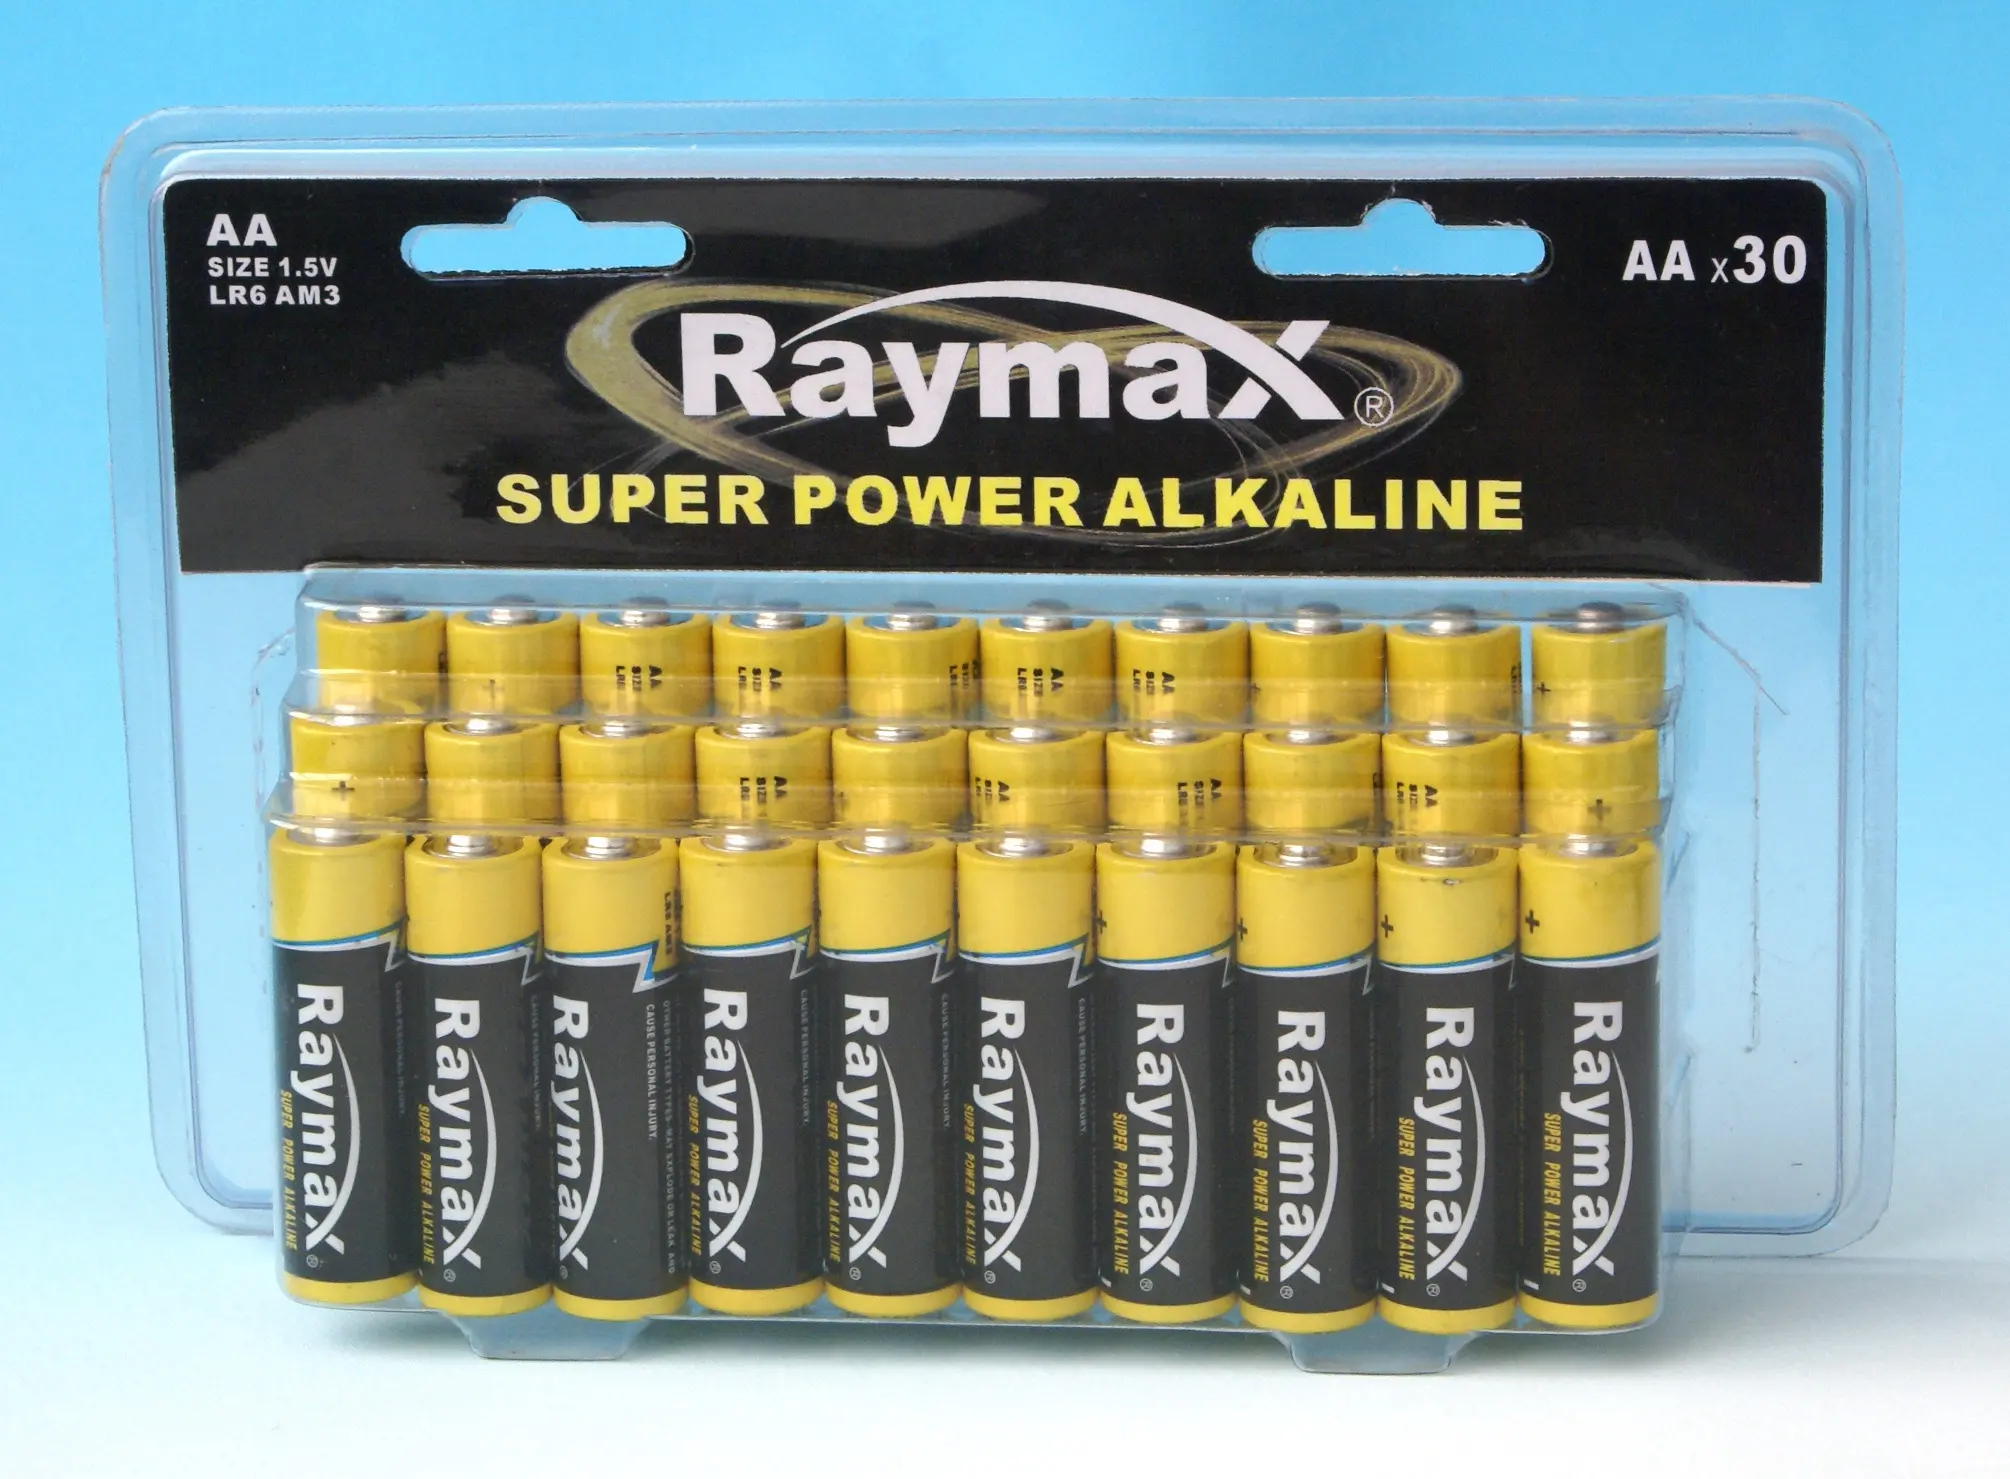 Raymax Durante Toda a Temporada de Venda Quente PVC Caixa 24pcs Baterias Alcalinas aa Baterias Primárias